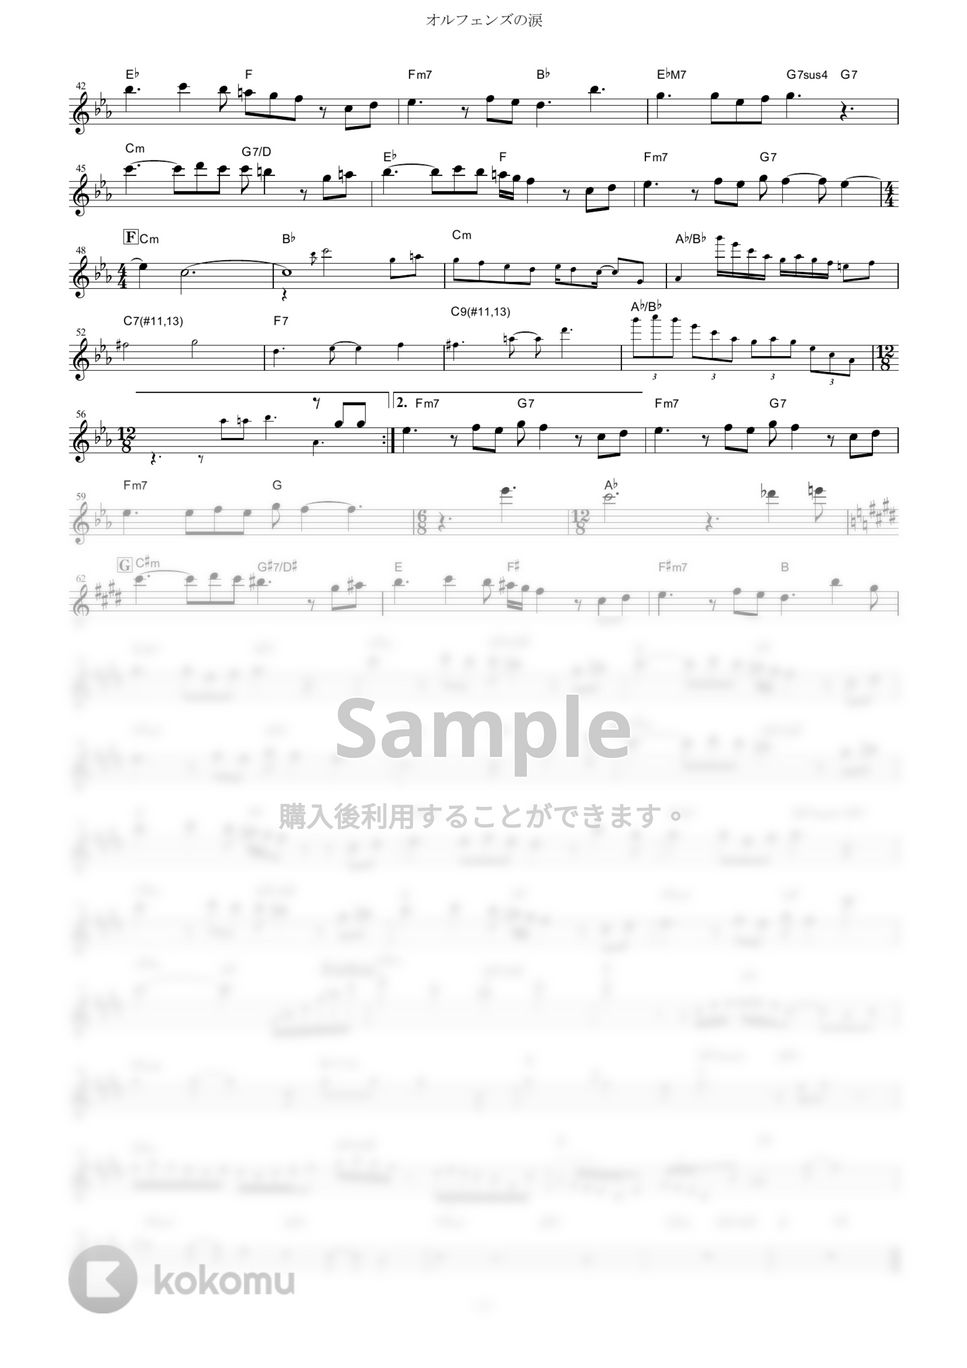 機動戦士ガンダム 鉄血のオルフェンズ - オルフェンズの涙【in Bb】 by muta-sax